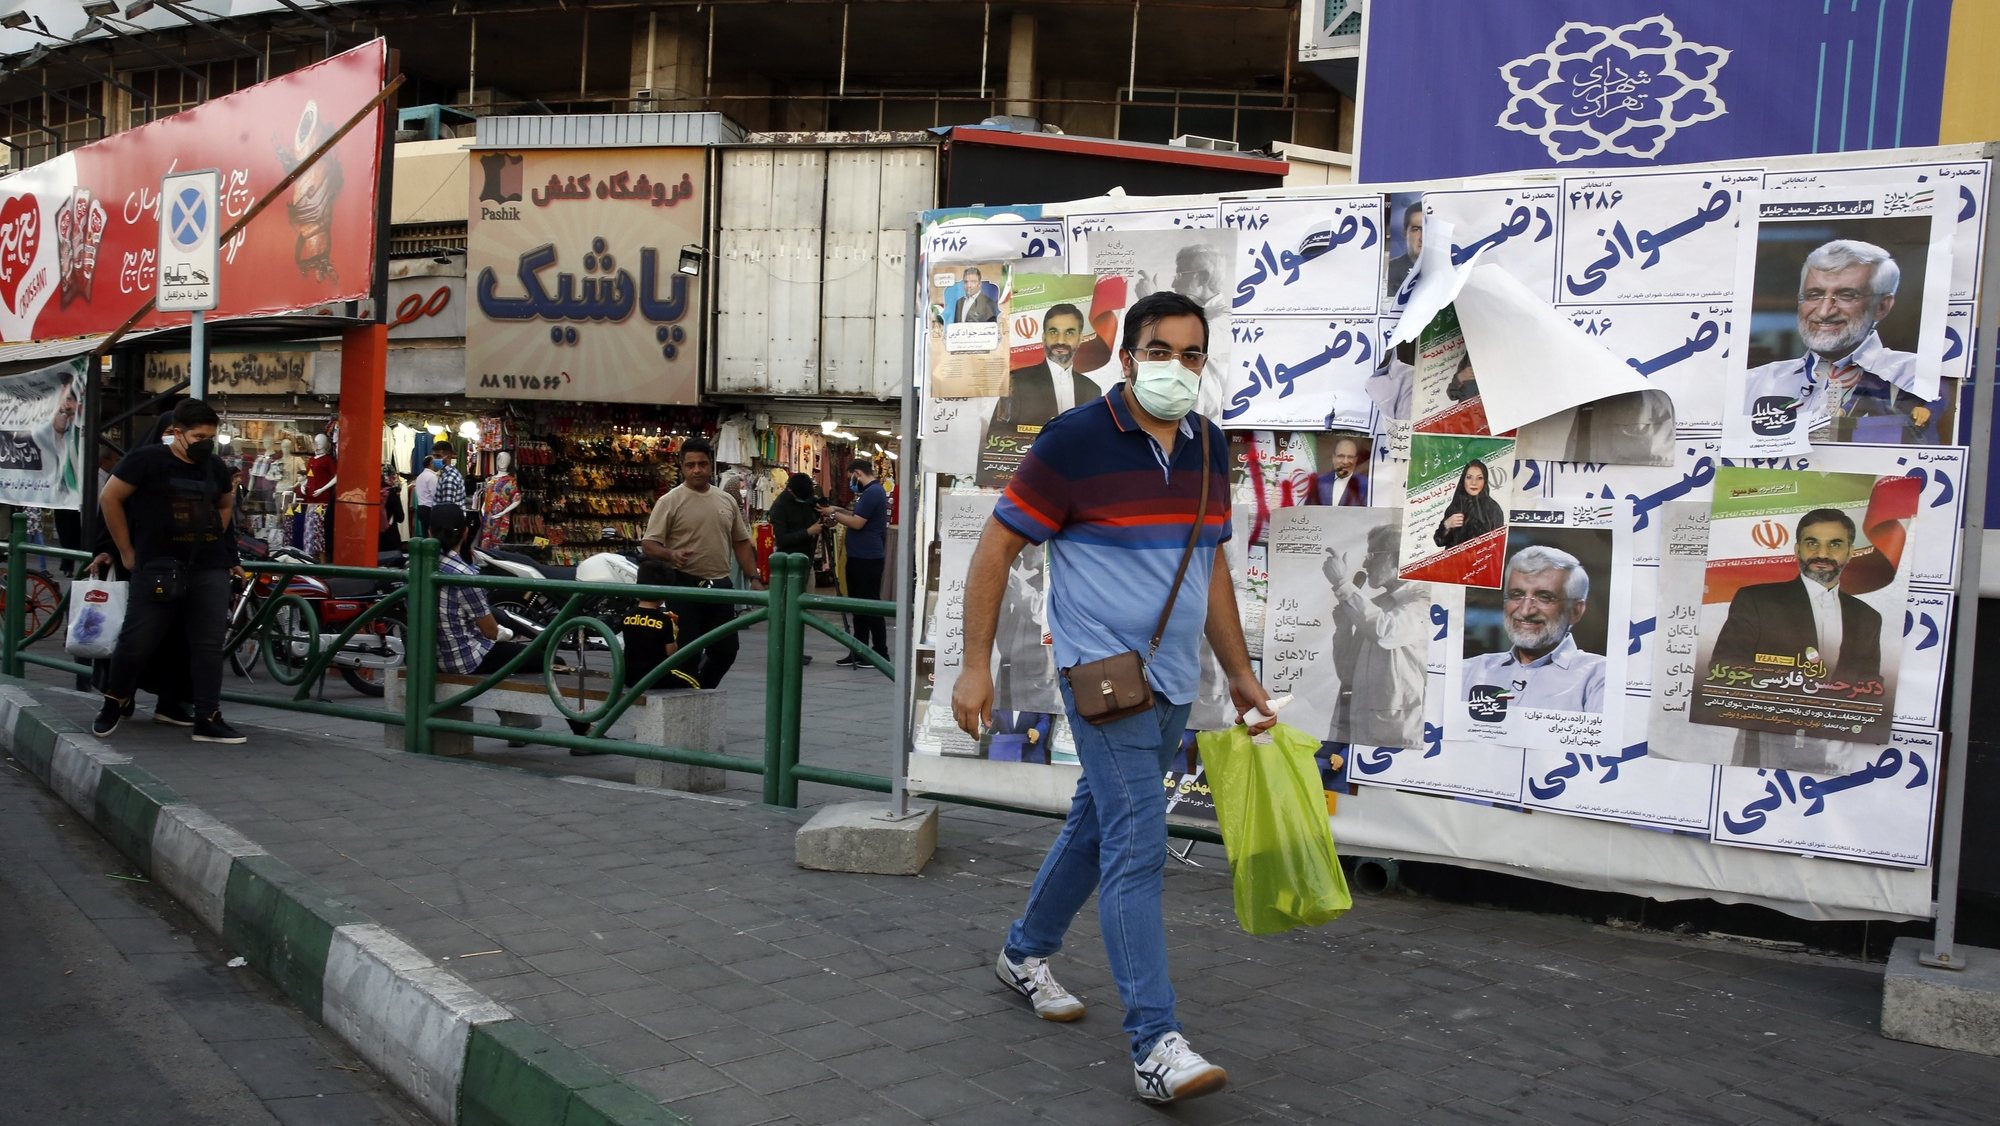 epa09274024 An Iranian man walks past elections billboard in a street in Tehran, Iran, 15 June 2021. Iranians will vote in a presidential election on 18 June 2021.   EPA/ABEDIN TAHERKENAREH